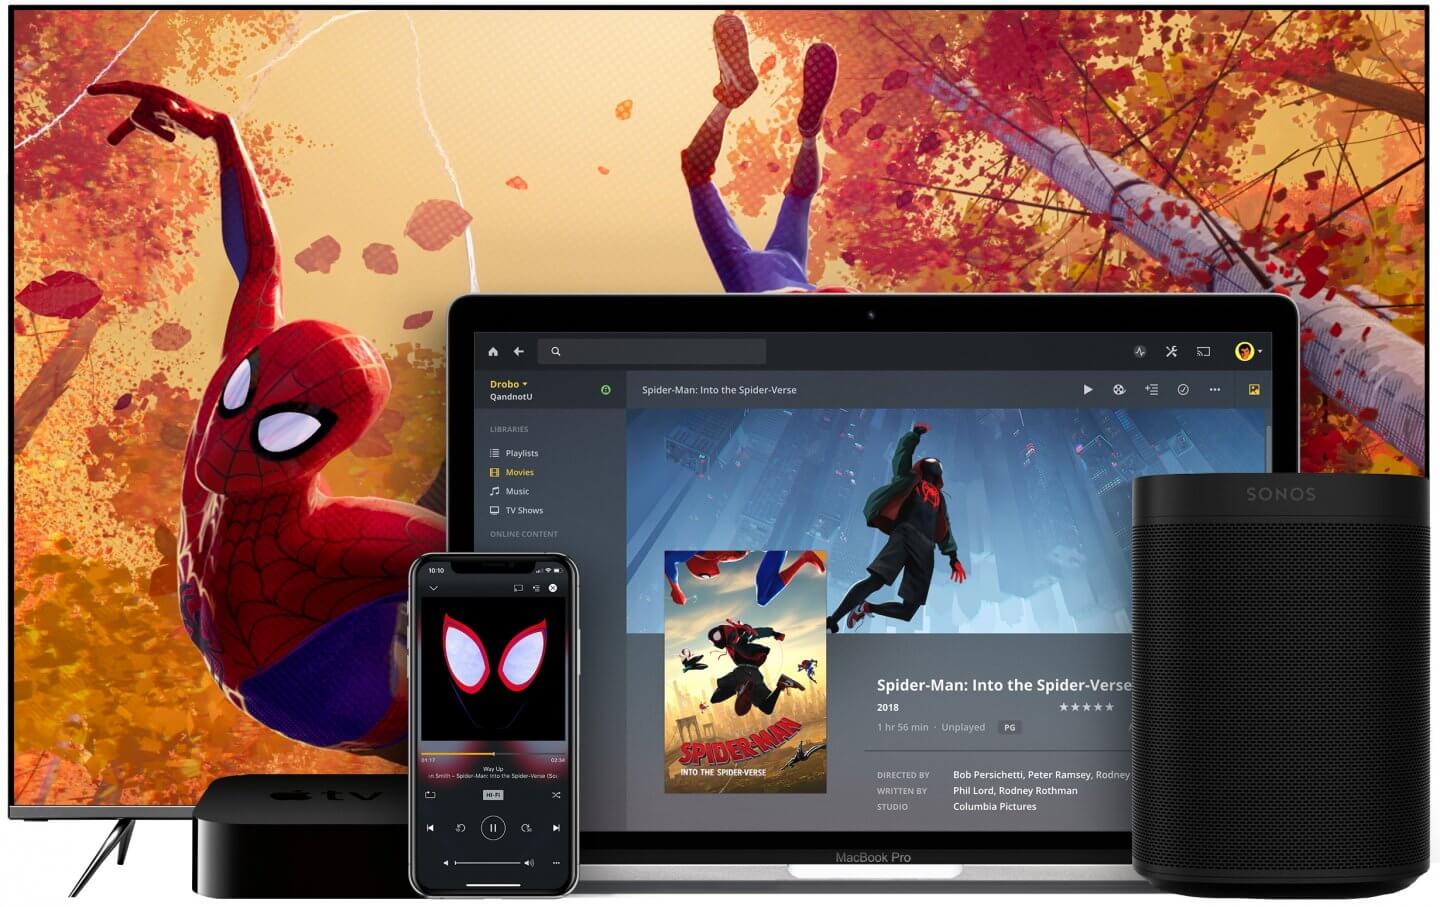 Plex presenta il nuovo servizio di streaming tv con film e programmi gratuiti